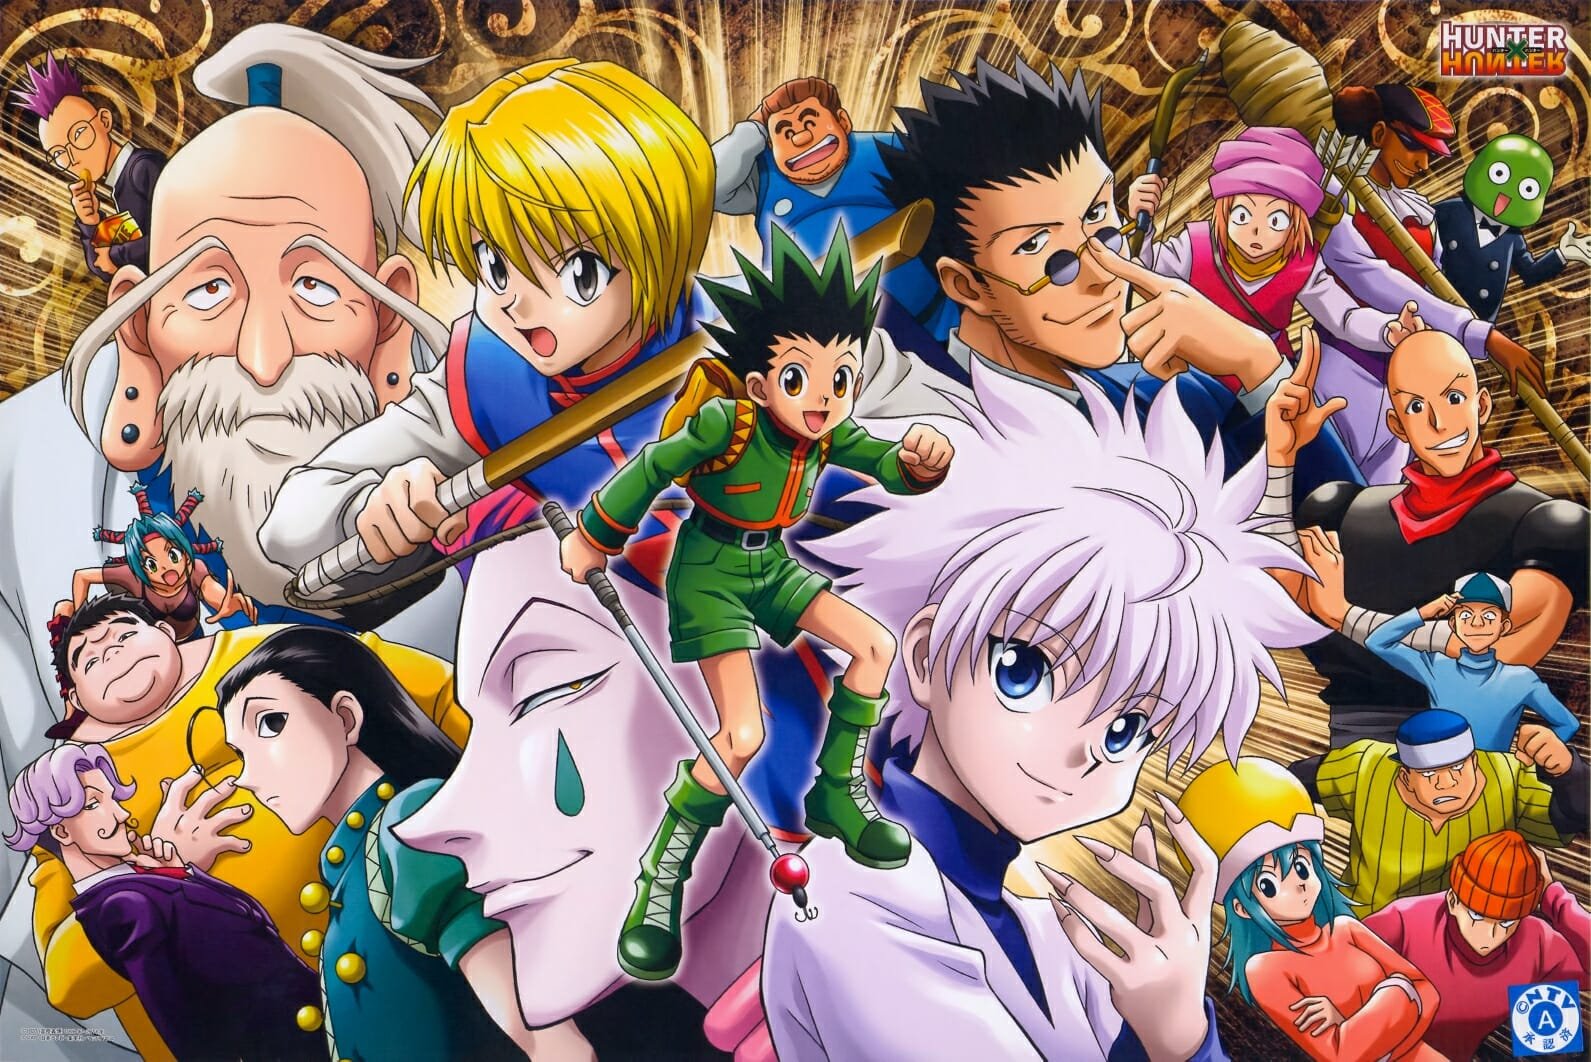 10 Best Anime on HBO Max You Must-Watch (2023) - Anime Ukiyo